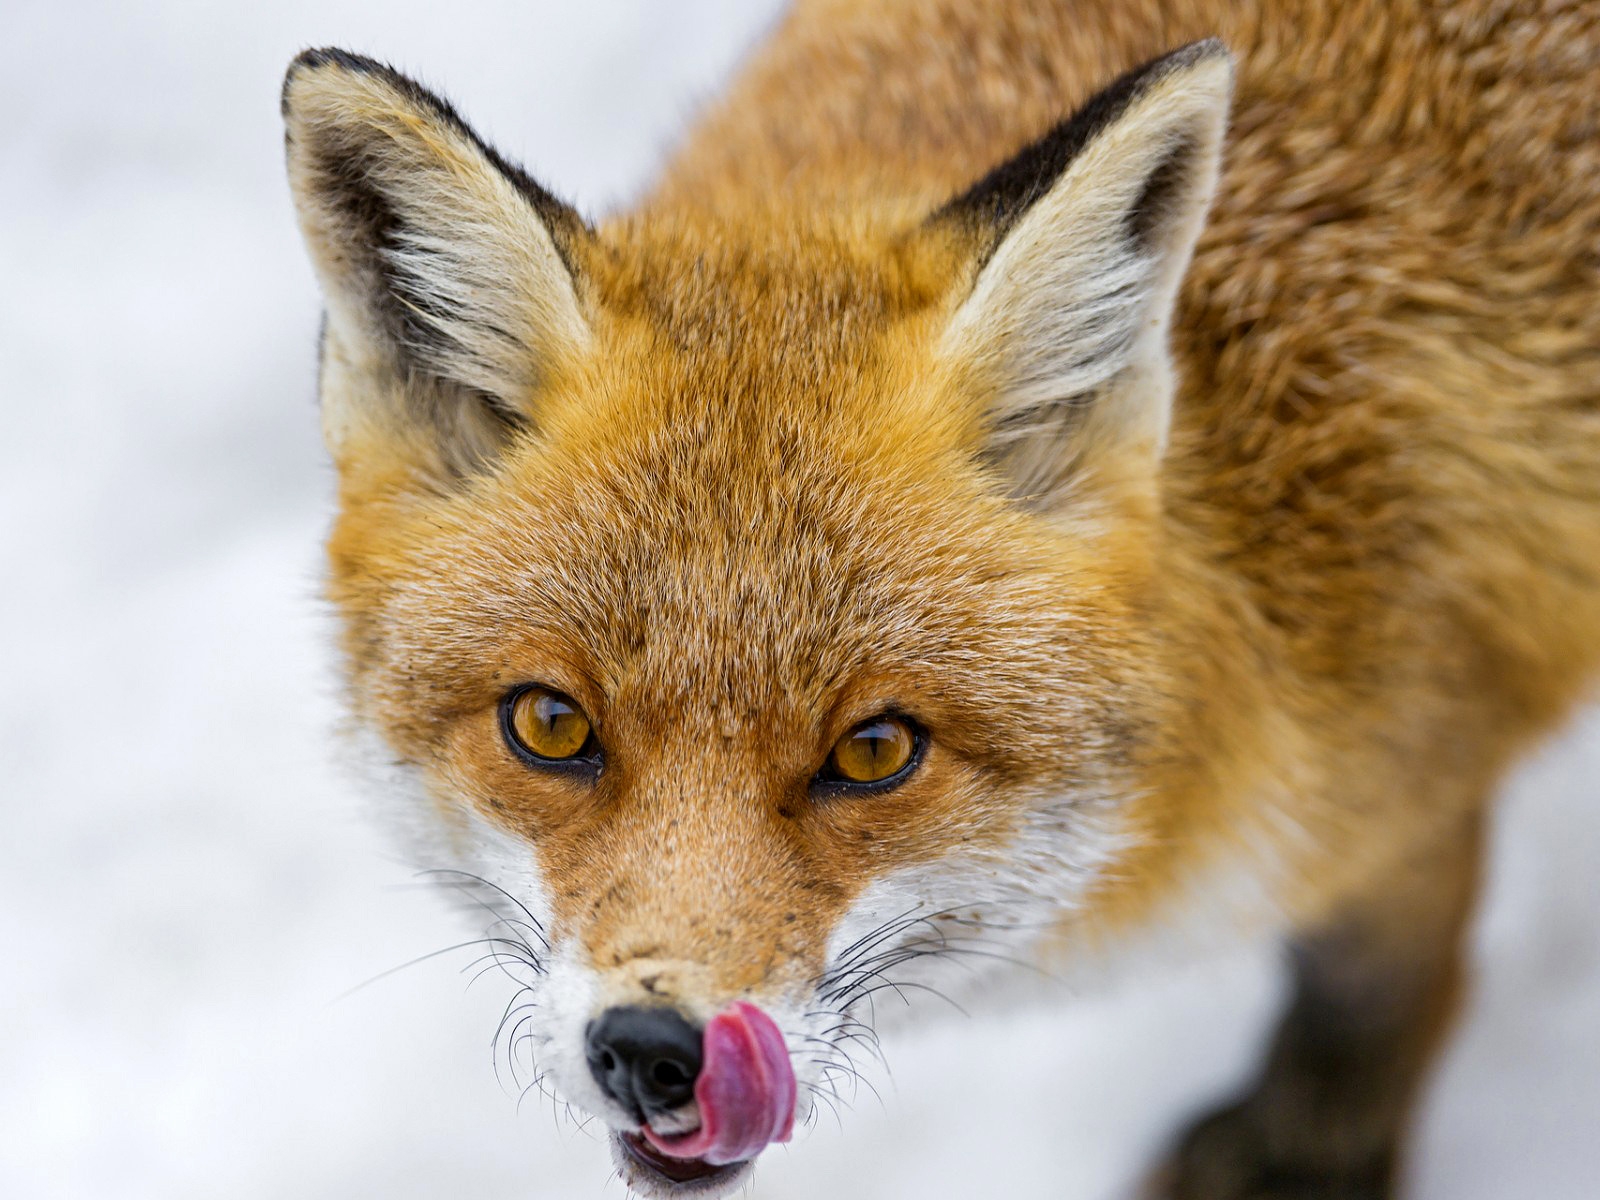 Greedy Fox for 1600 x 1200 resolution